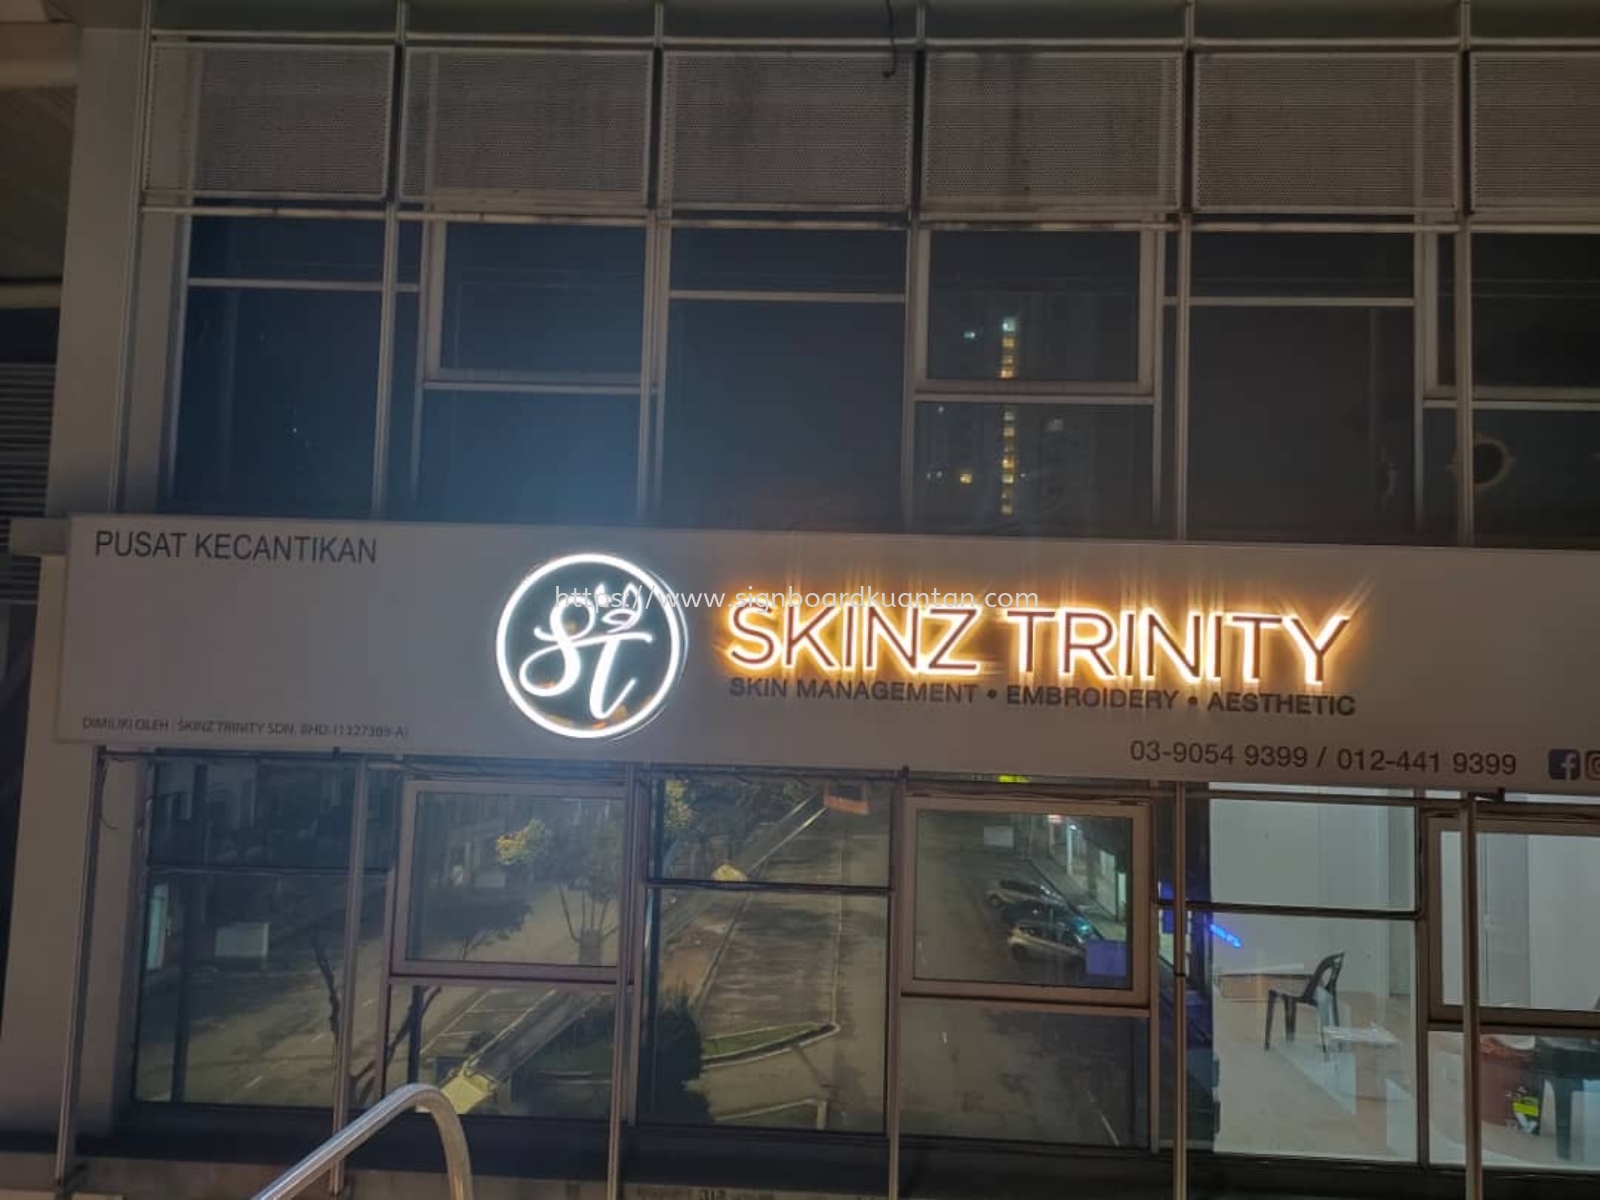 SKINZ TRINITY 3D LED BACKLIT SIGNAGE SIGNBOARD AT KARAK